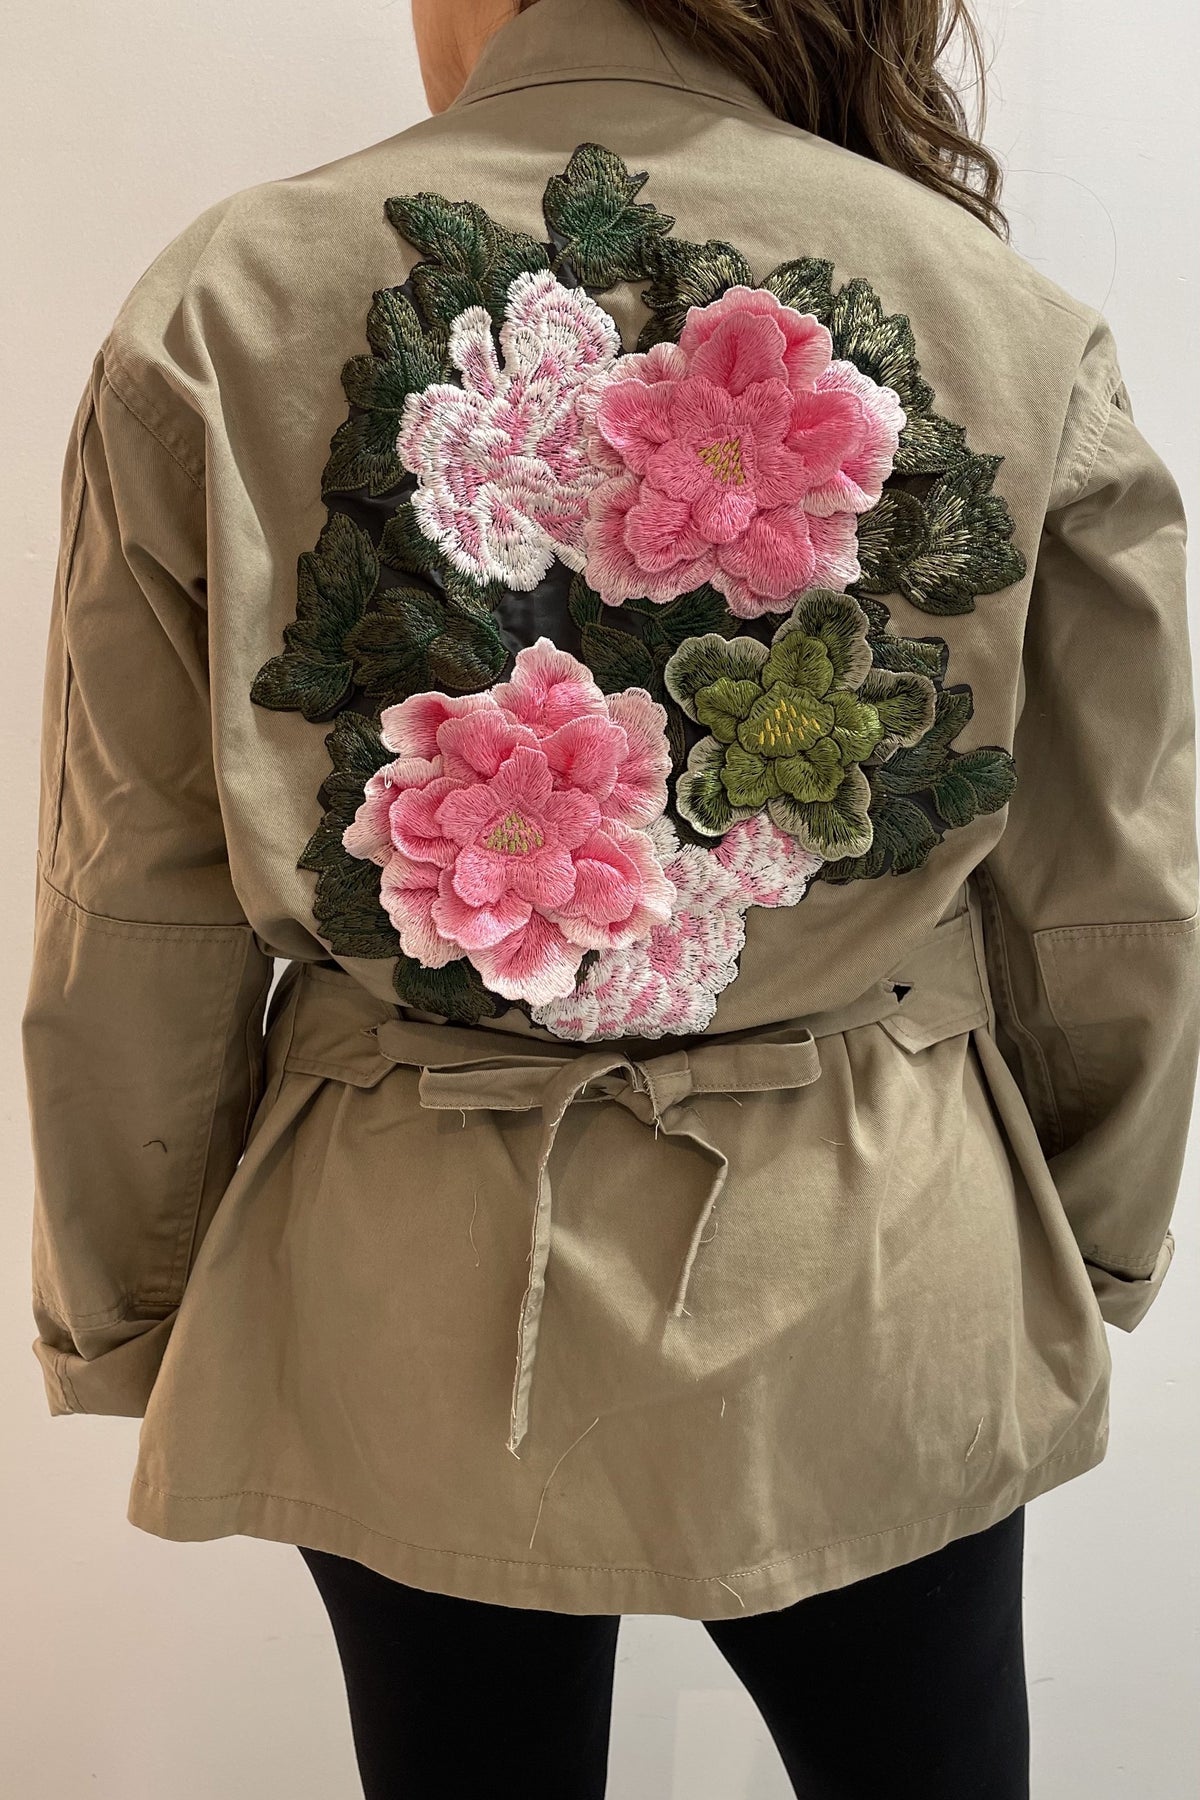 Josie Bruneau Veste vintage à fleurs rose pêche